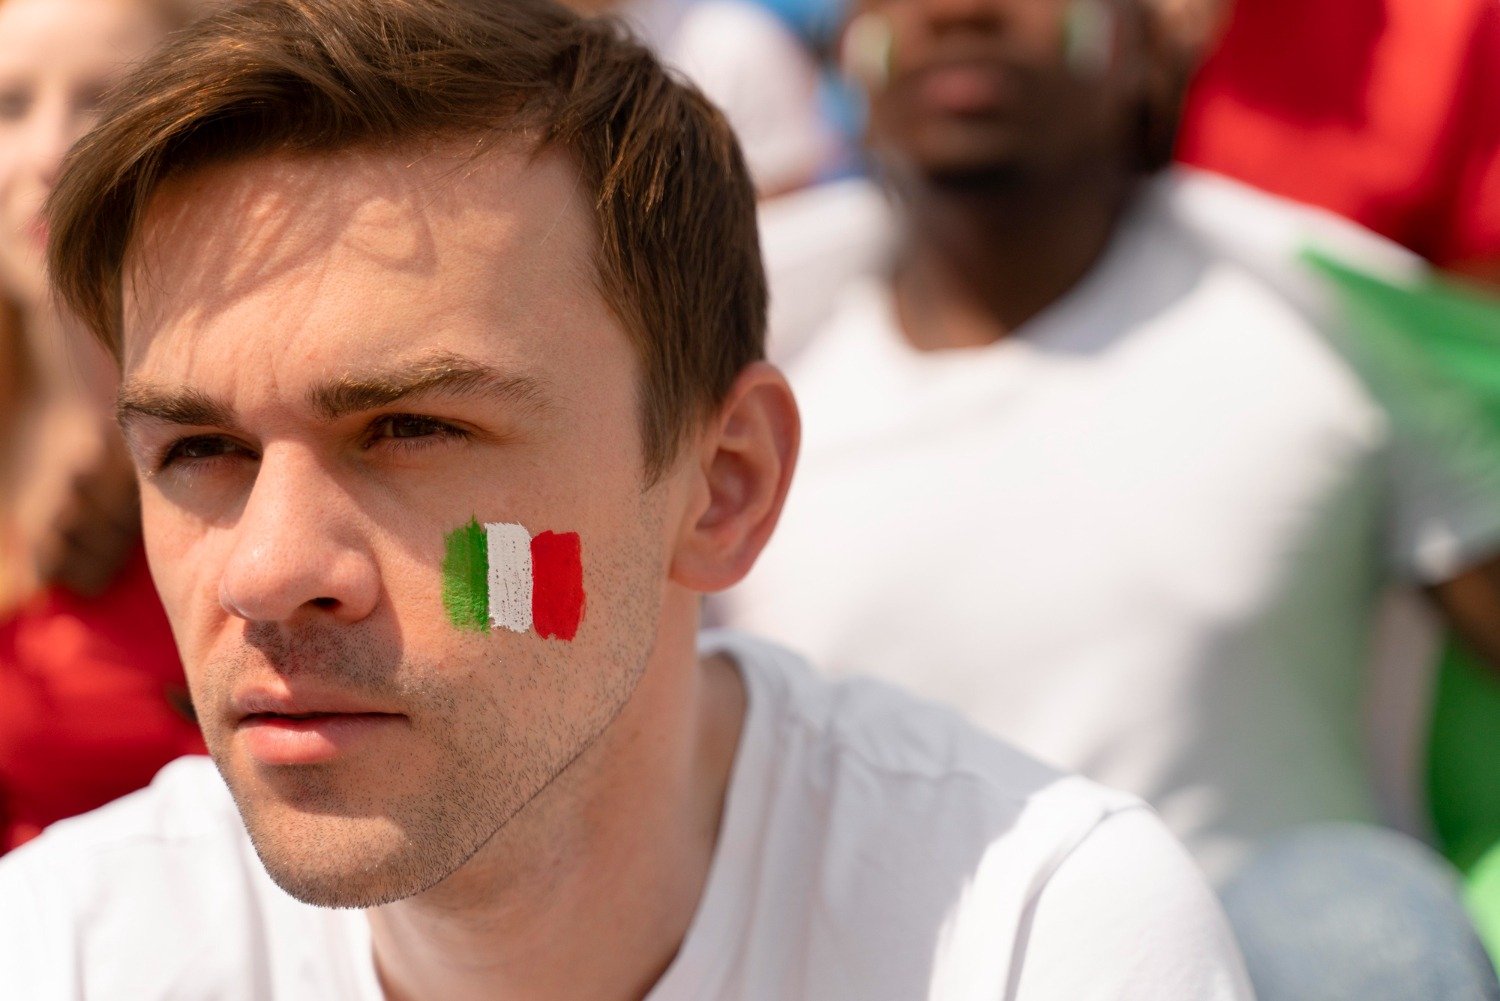 Muitos imaginam que a Itália na Copa do Mundo sempre teve grandes conquistas. No entanto, alguns vexames já aconteceram. Veja as campanhas.